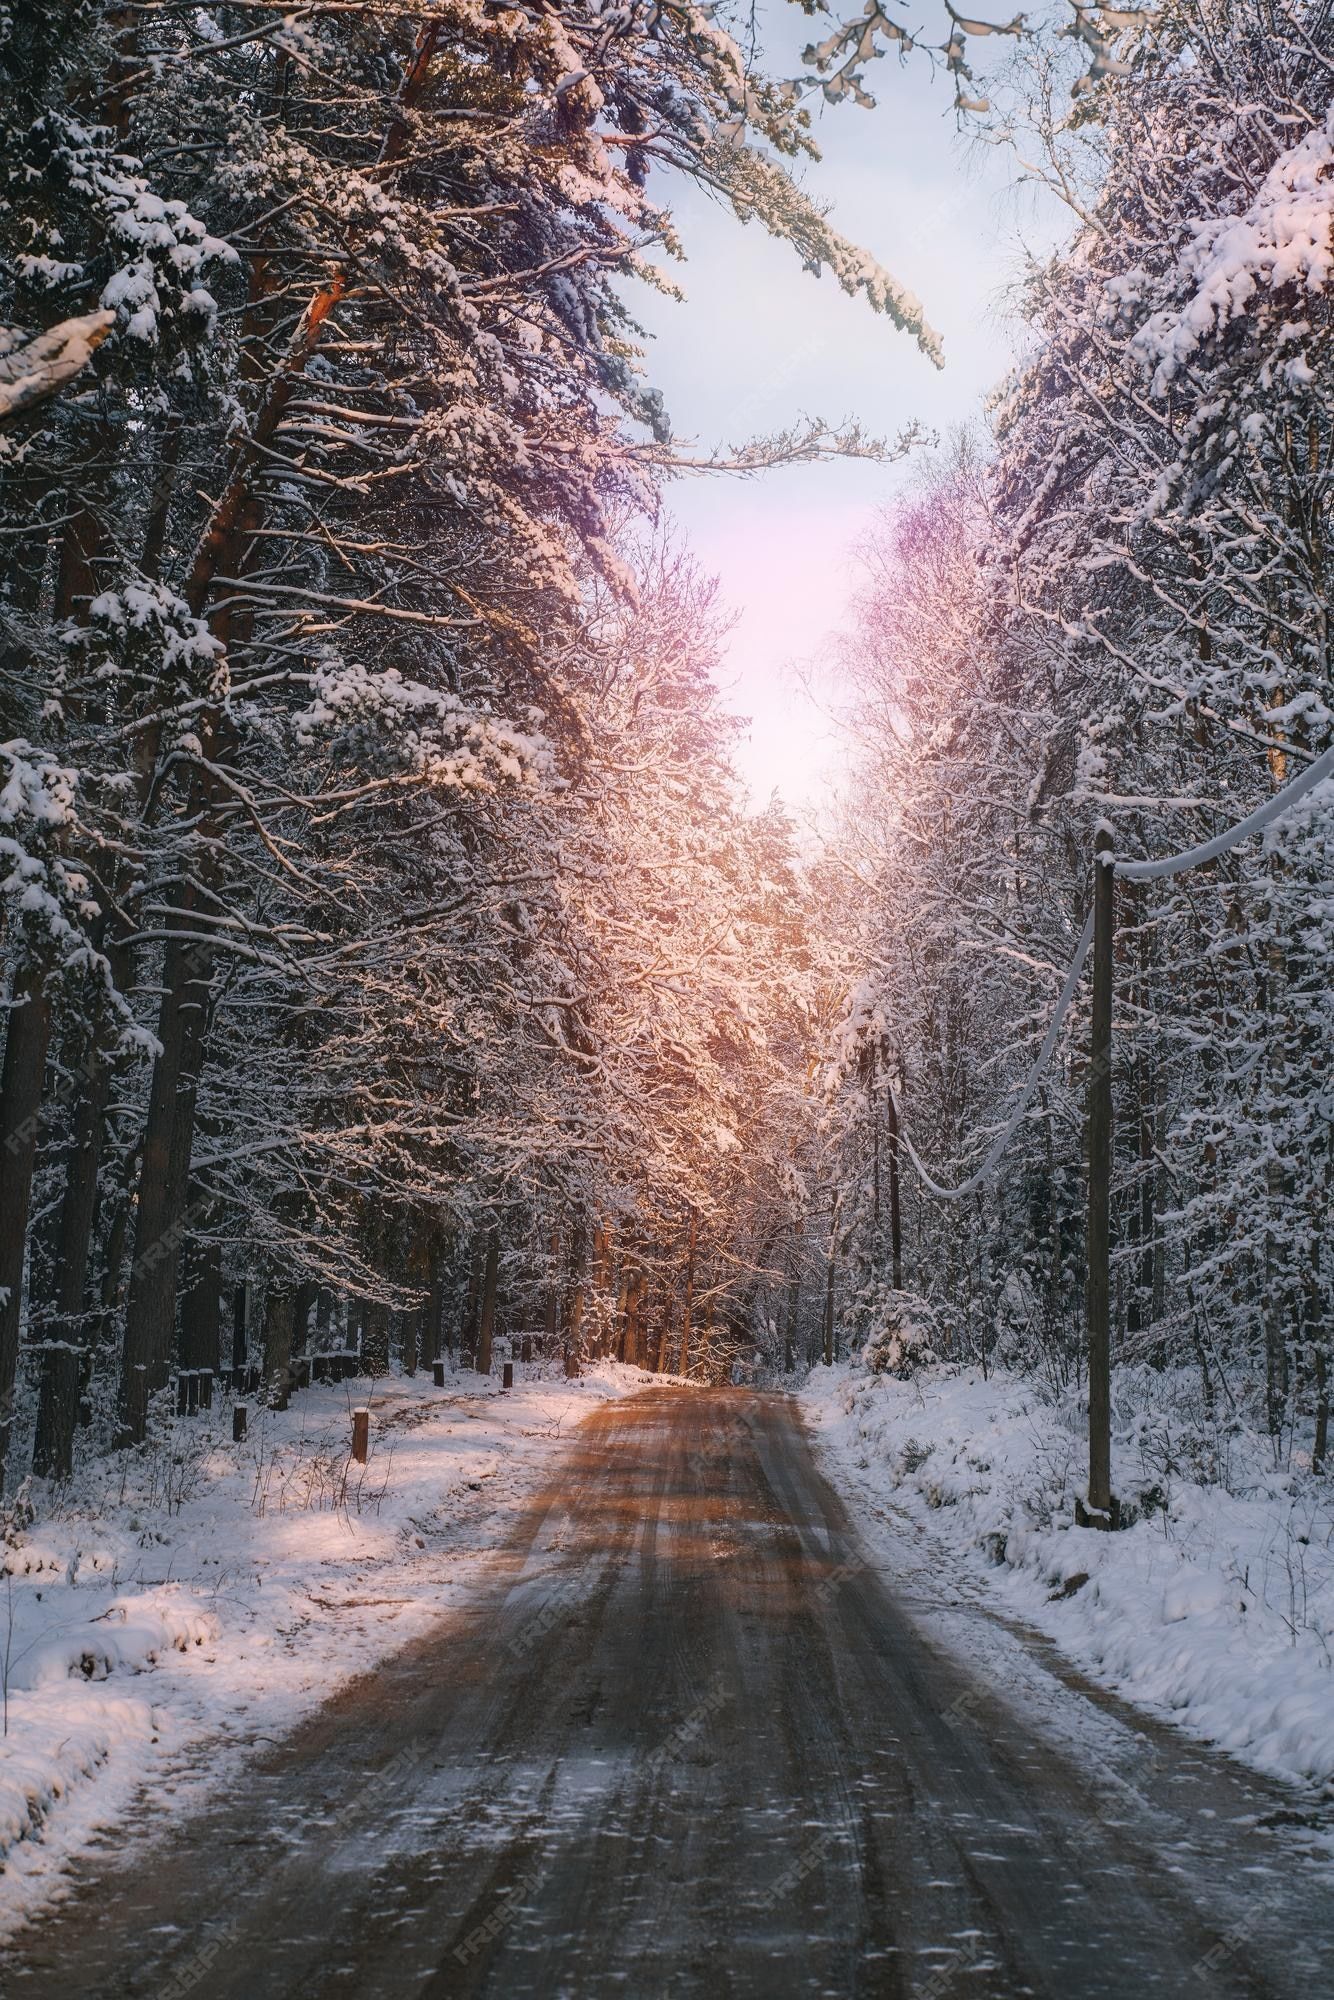  Winterwald Hintergrundbild 1334x2000. Winterwaldgasse, die während des schneesturms von schnee bedeckt ist ländlicher weg im wald im winter